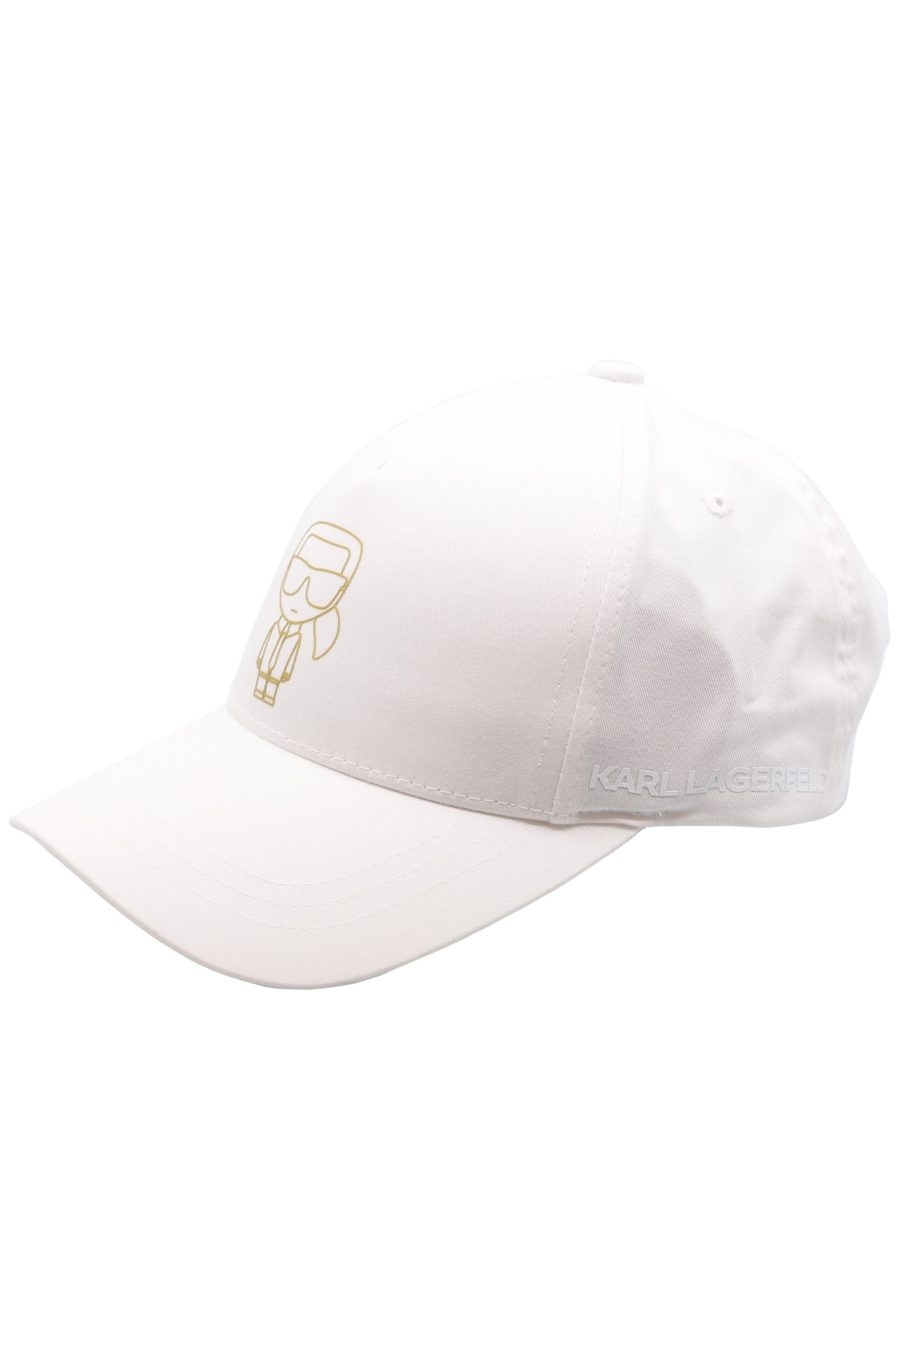 White cap with gold "Karl" - f38c72ba8b42f4d24966d095233dce1d02b4b4b4df